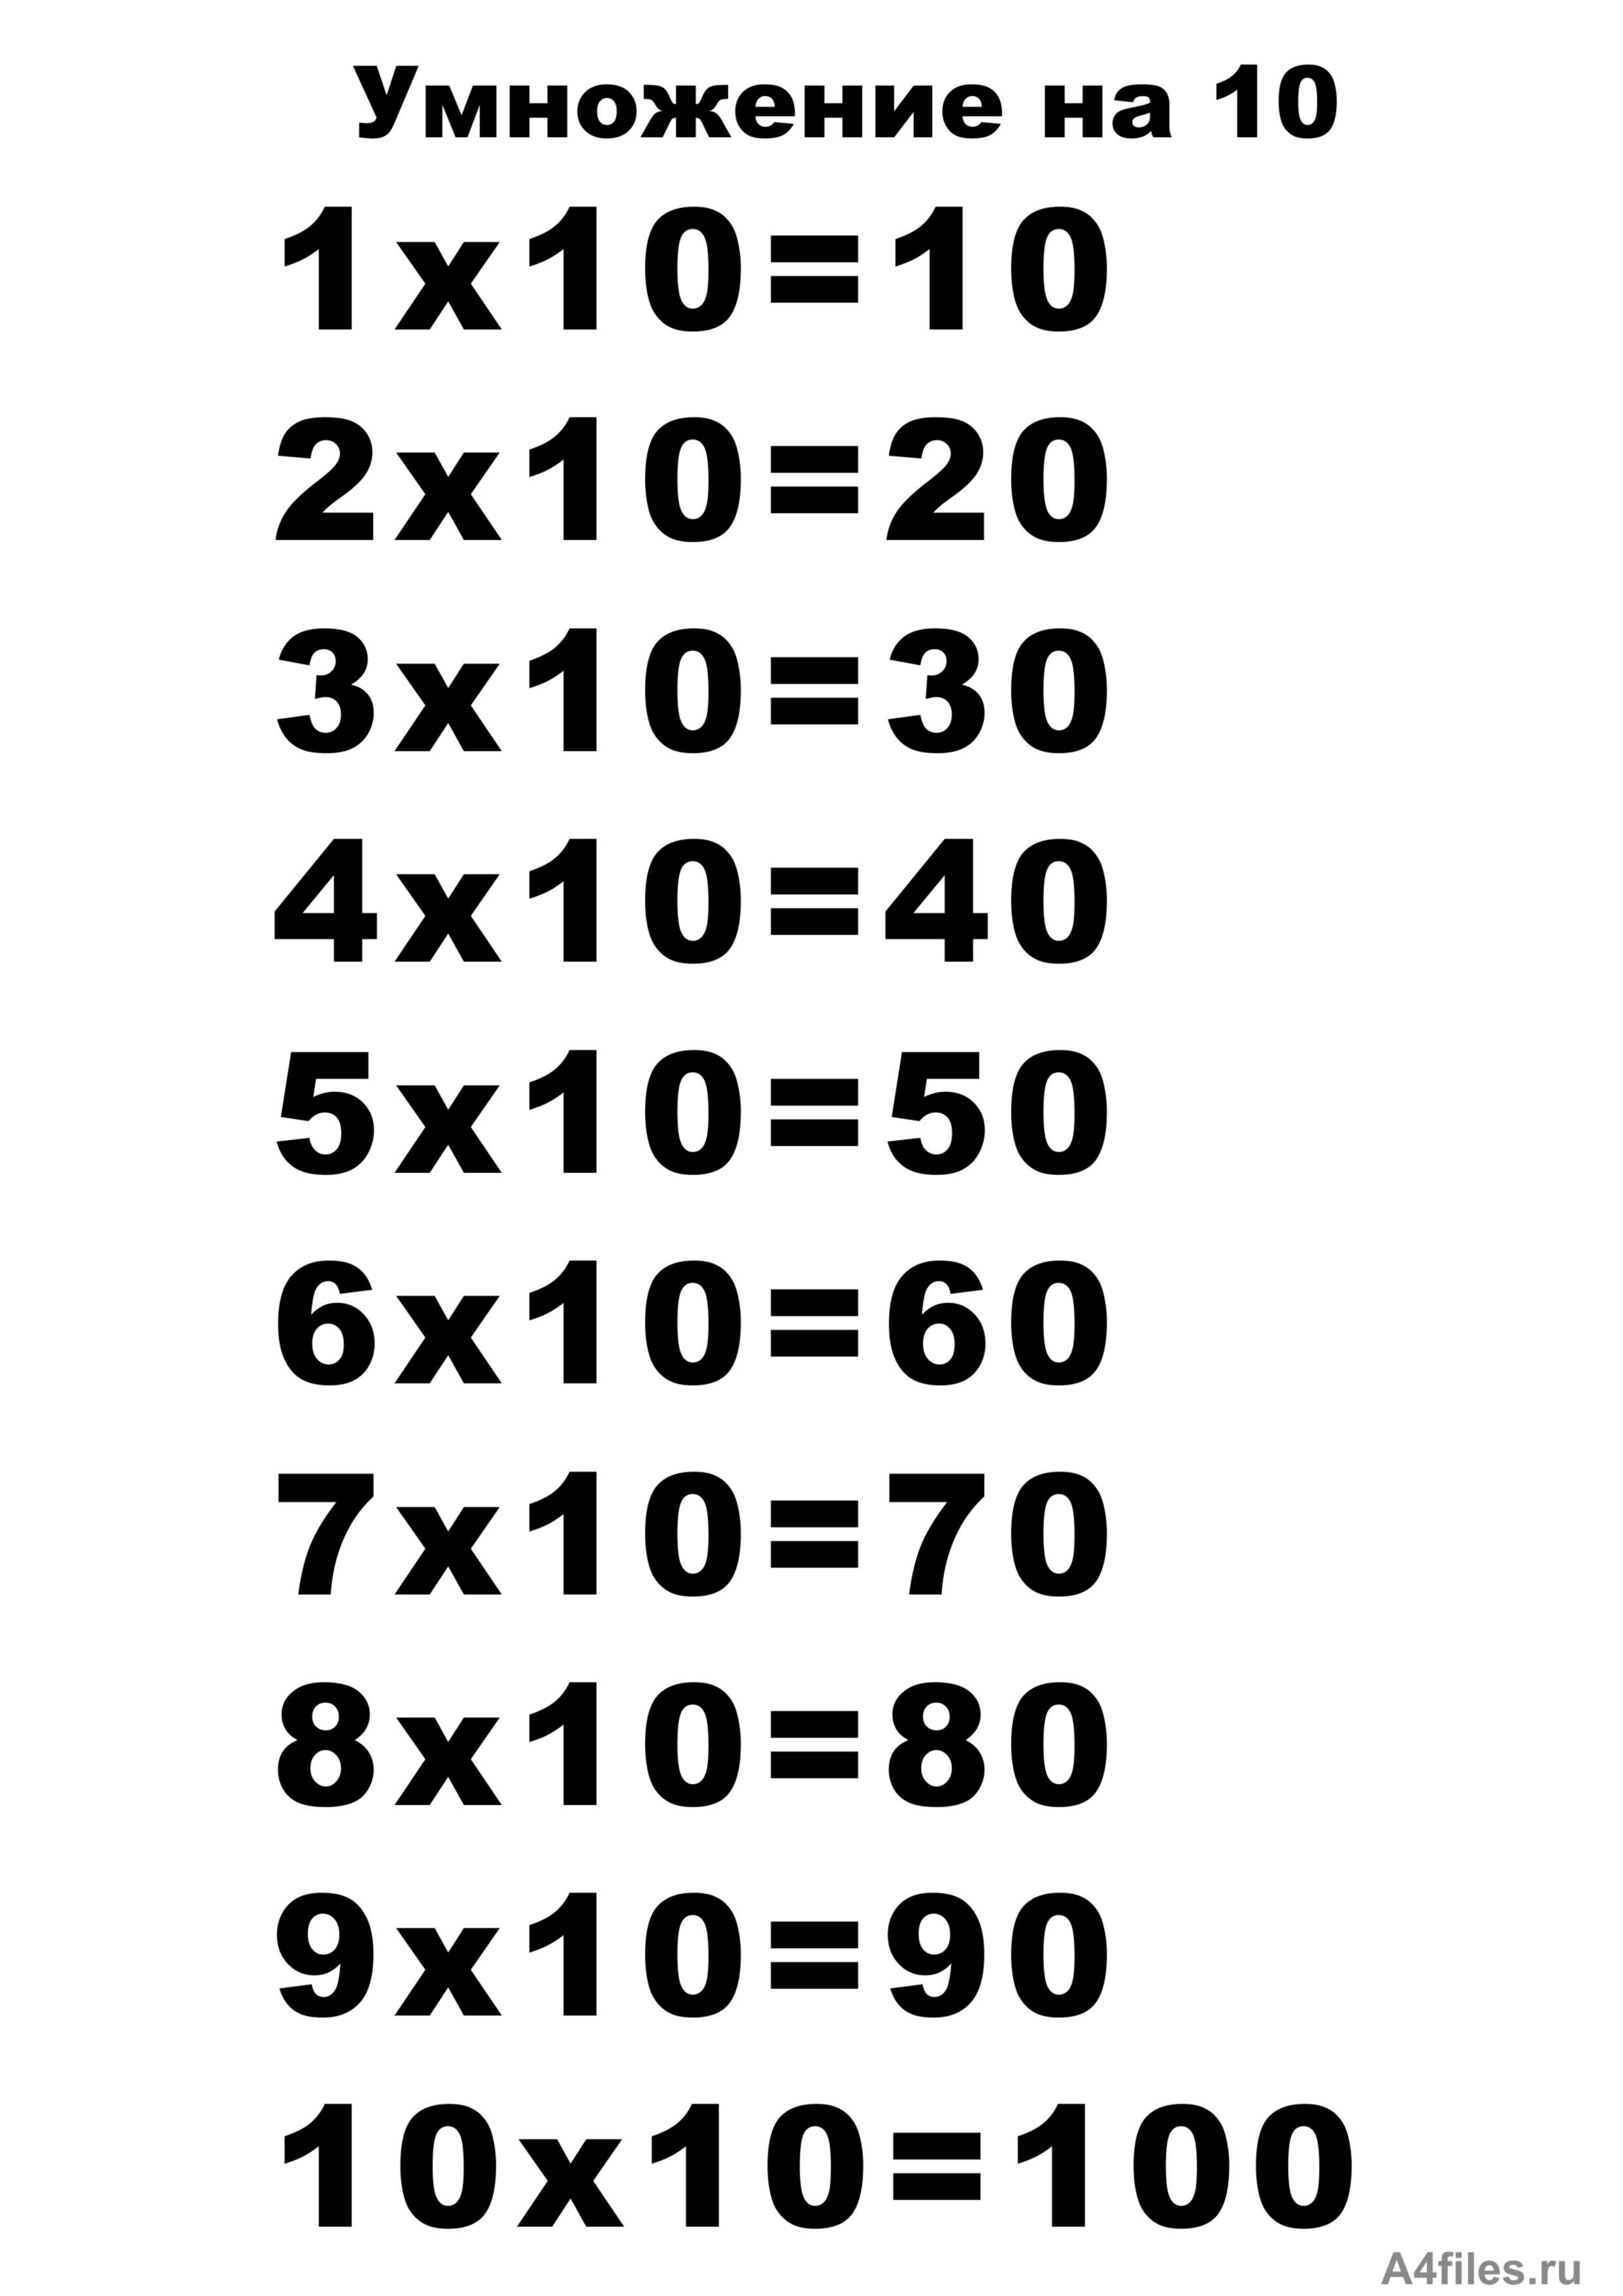 10 минут умножить на 10. Таблицв умнажения на "10. Таблица умножения на 10 распечатать а4 Формат. Таблица на 10. Т͇а͇б͇л͇и͇ц͇а͇ У͇М͇Н͇О͇Ж͇Е͇Н͇И͇Й͇.